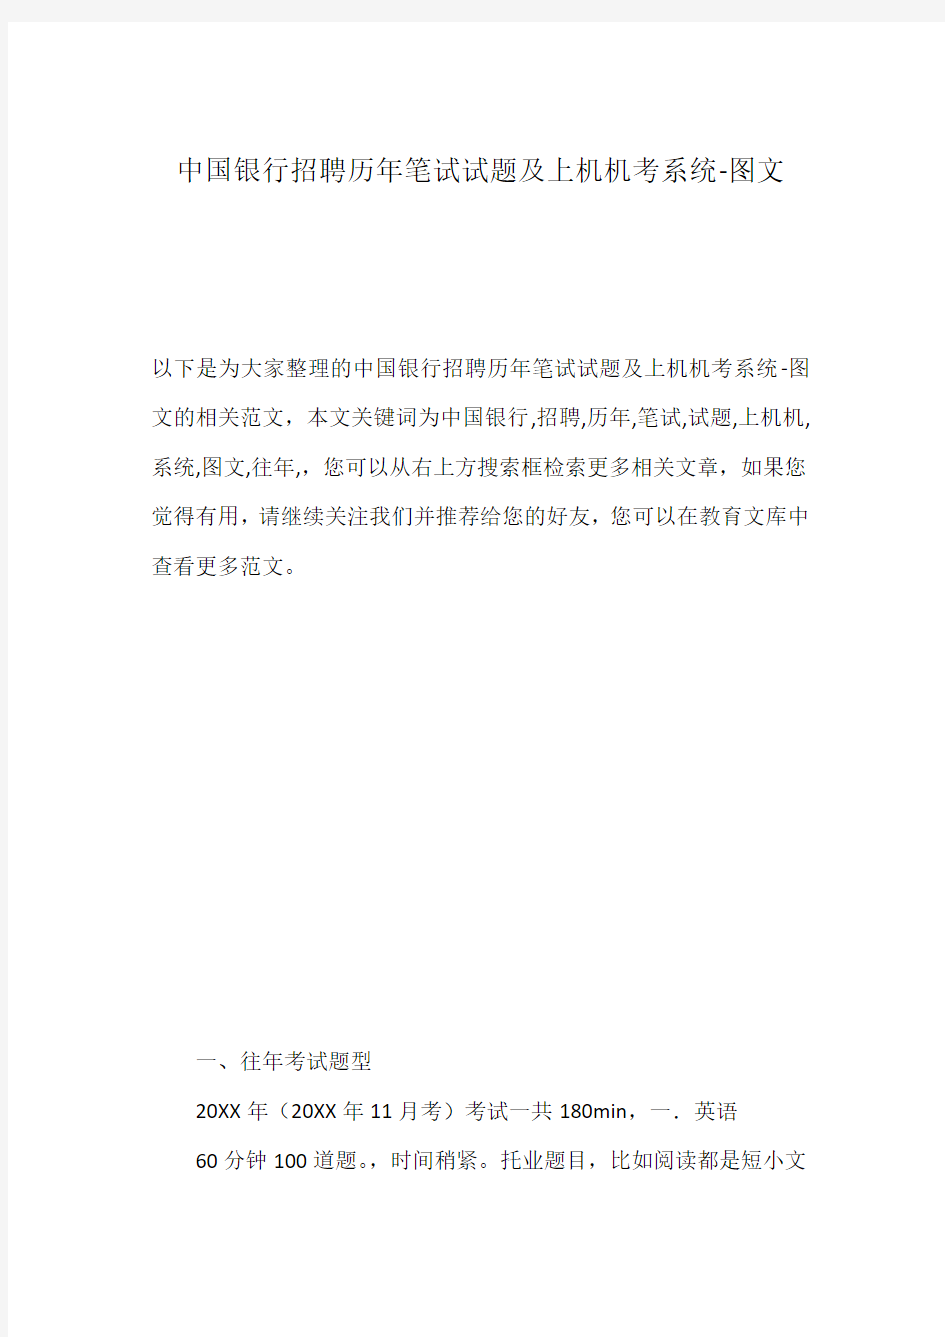 中国银行招聘历年笔试试题及上机机考系统-图文